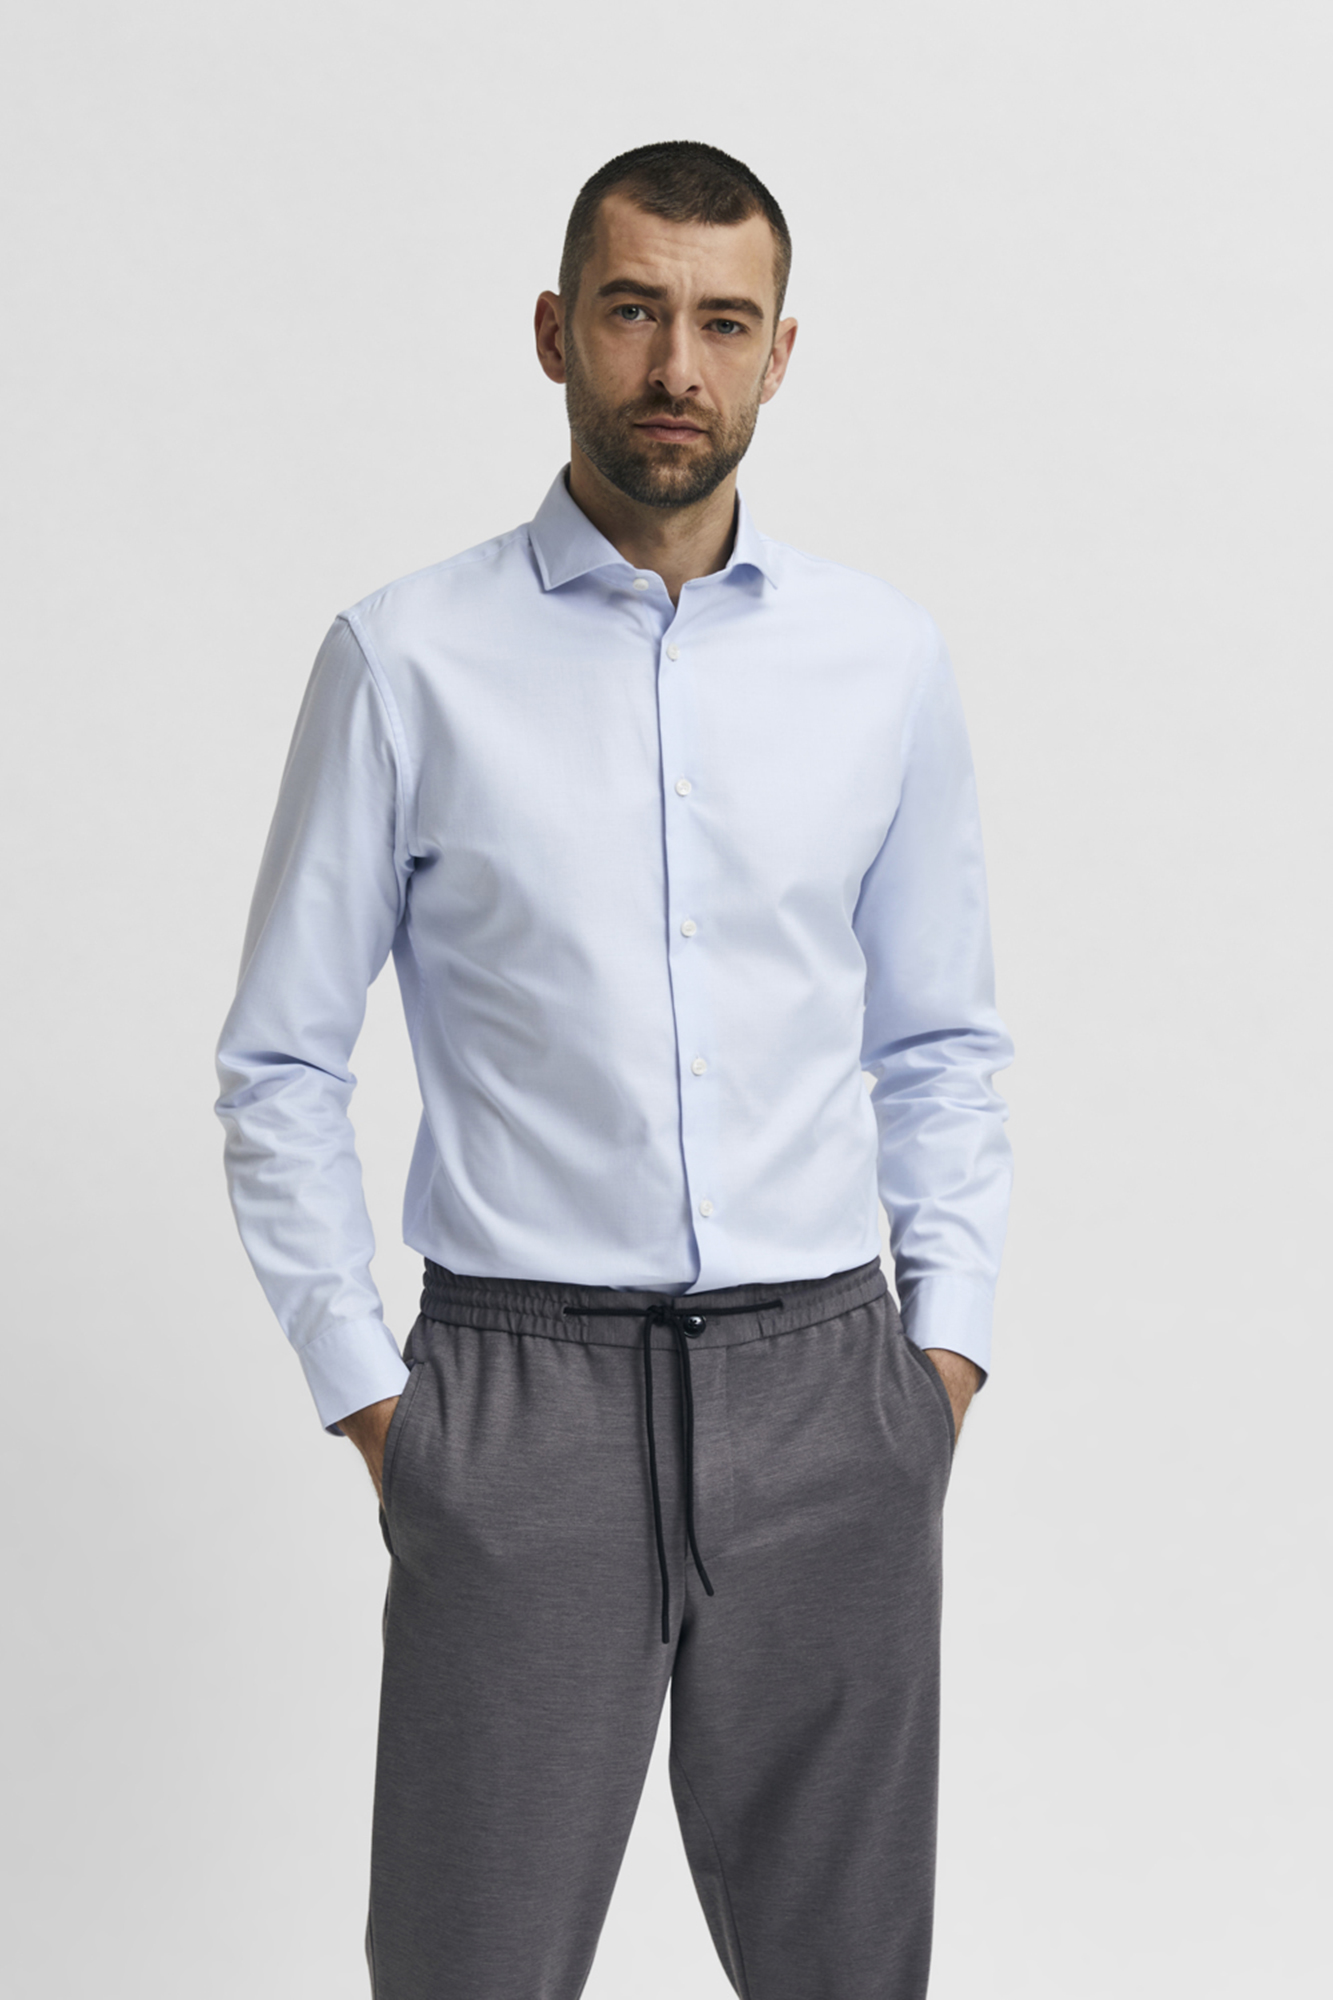 URBAN CLASSICS Camisola masculina oversize, camisola de manga comprida,  100% algodão, punhos nas mangas